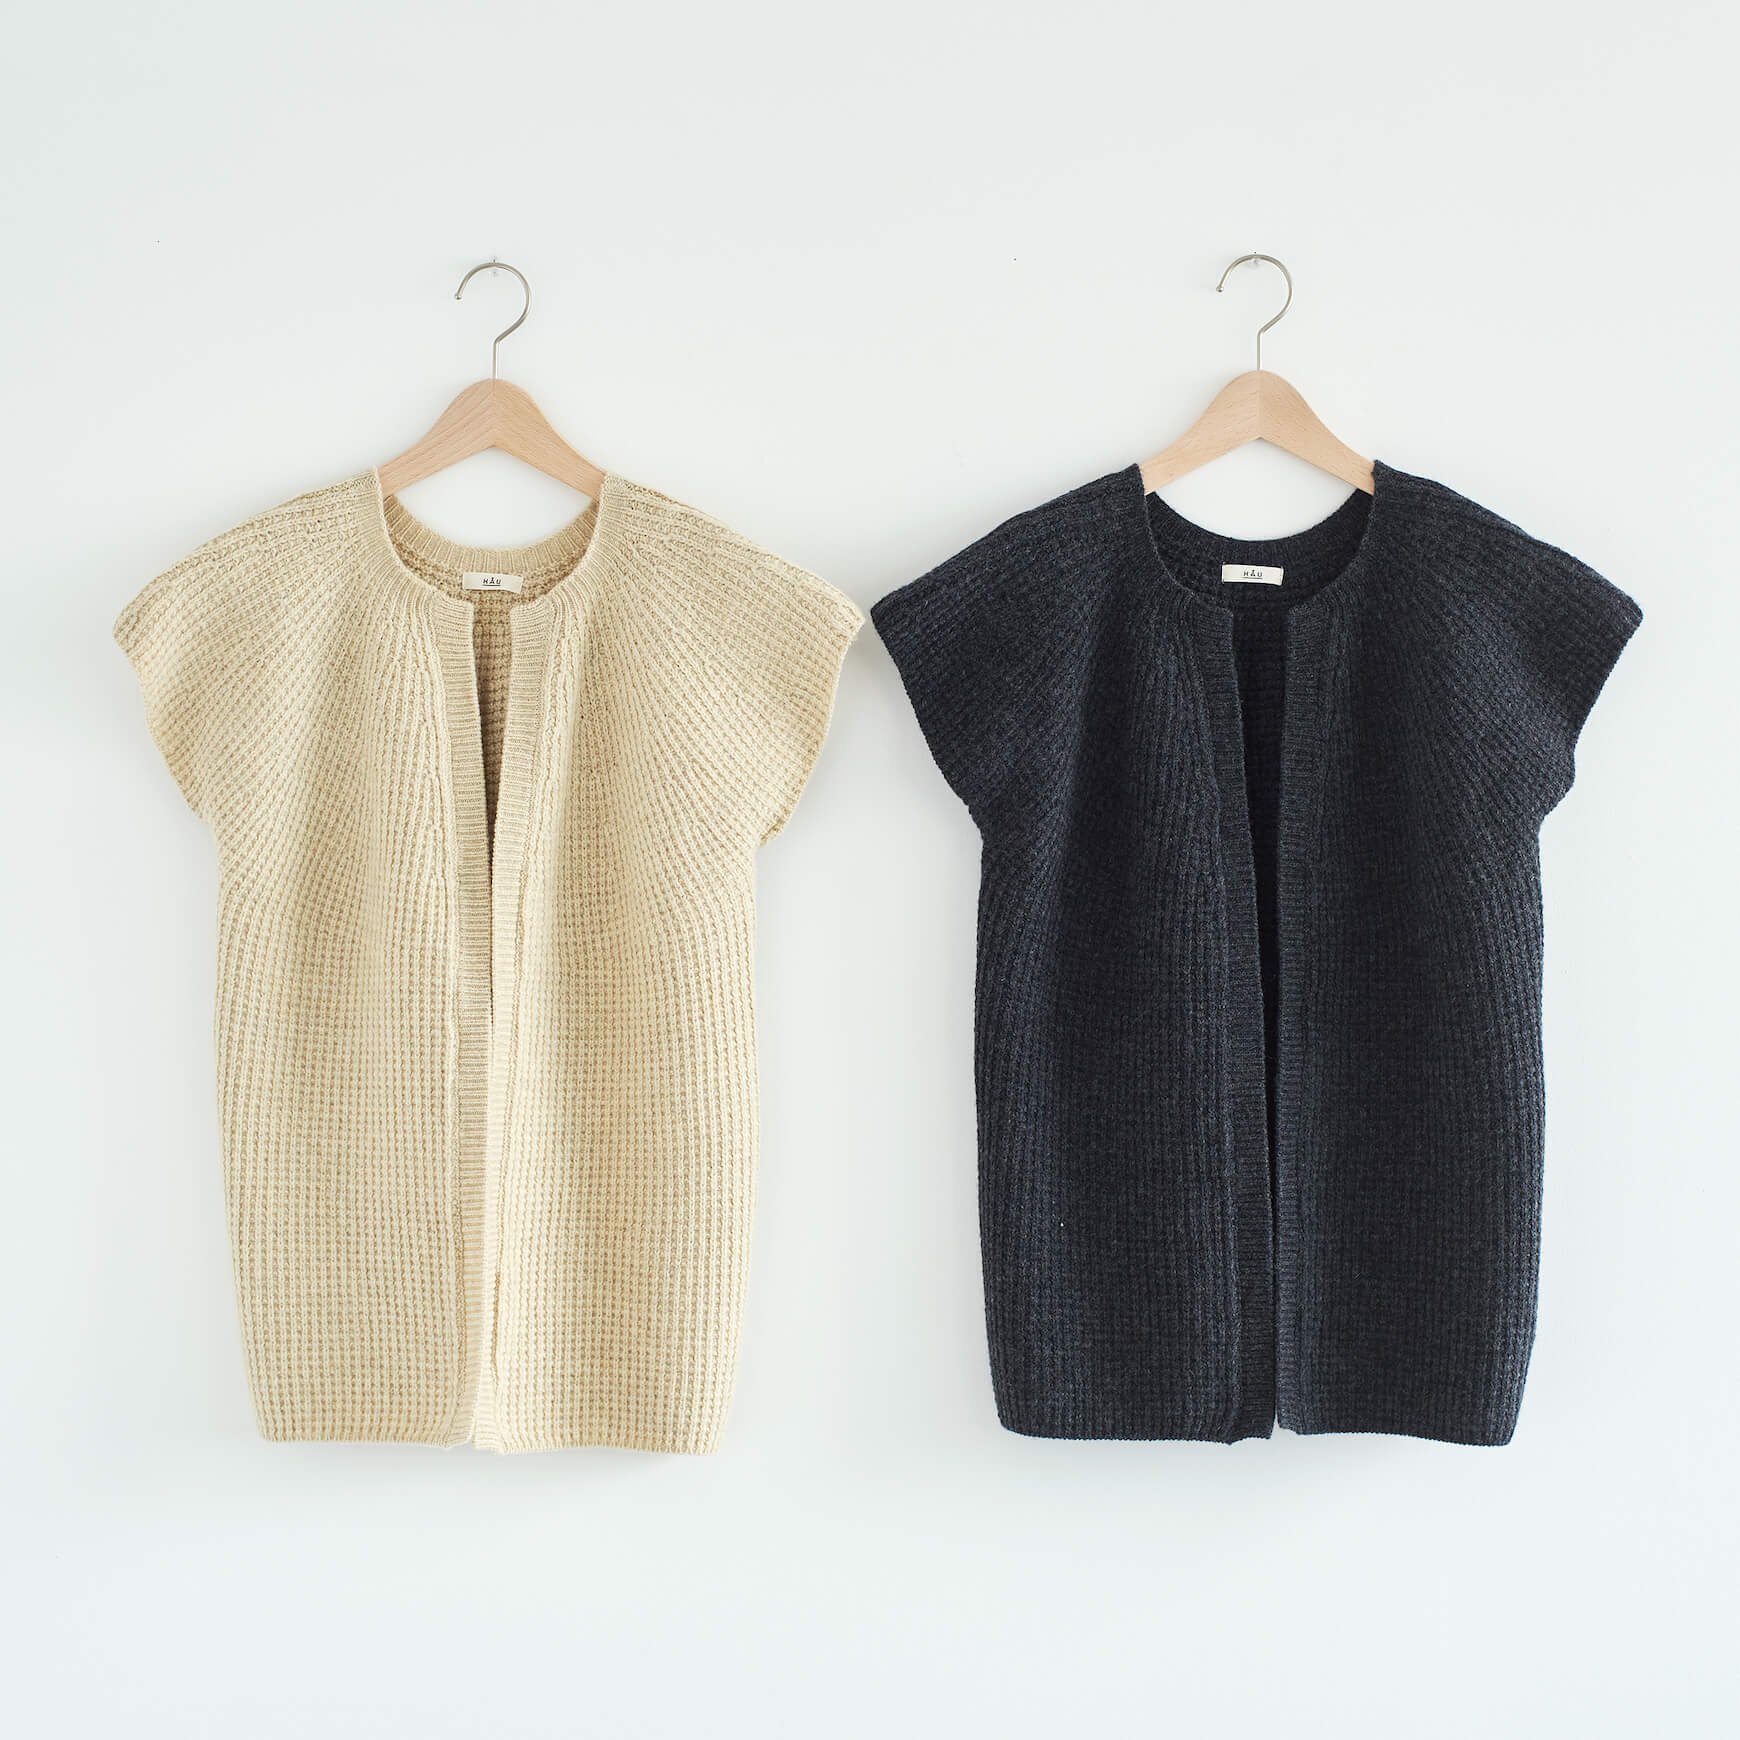  knit  vest  